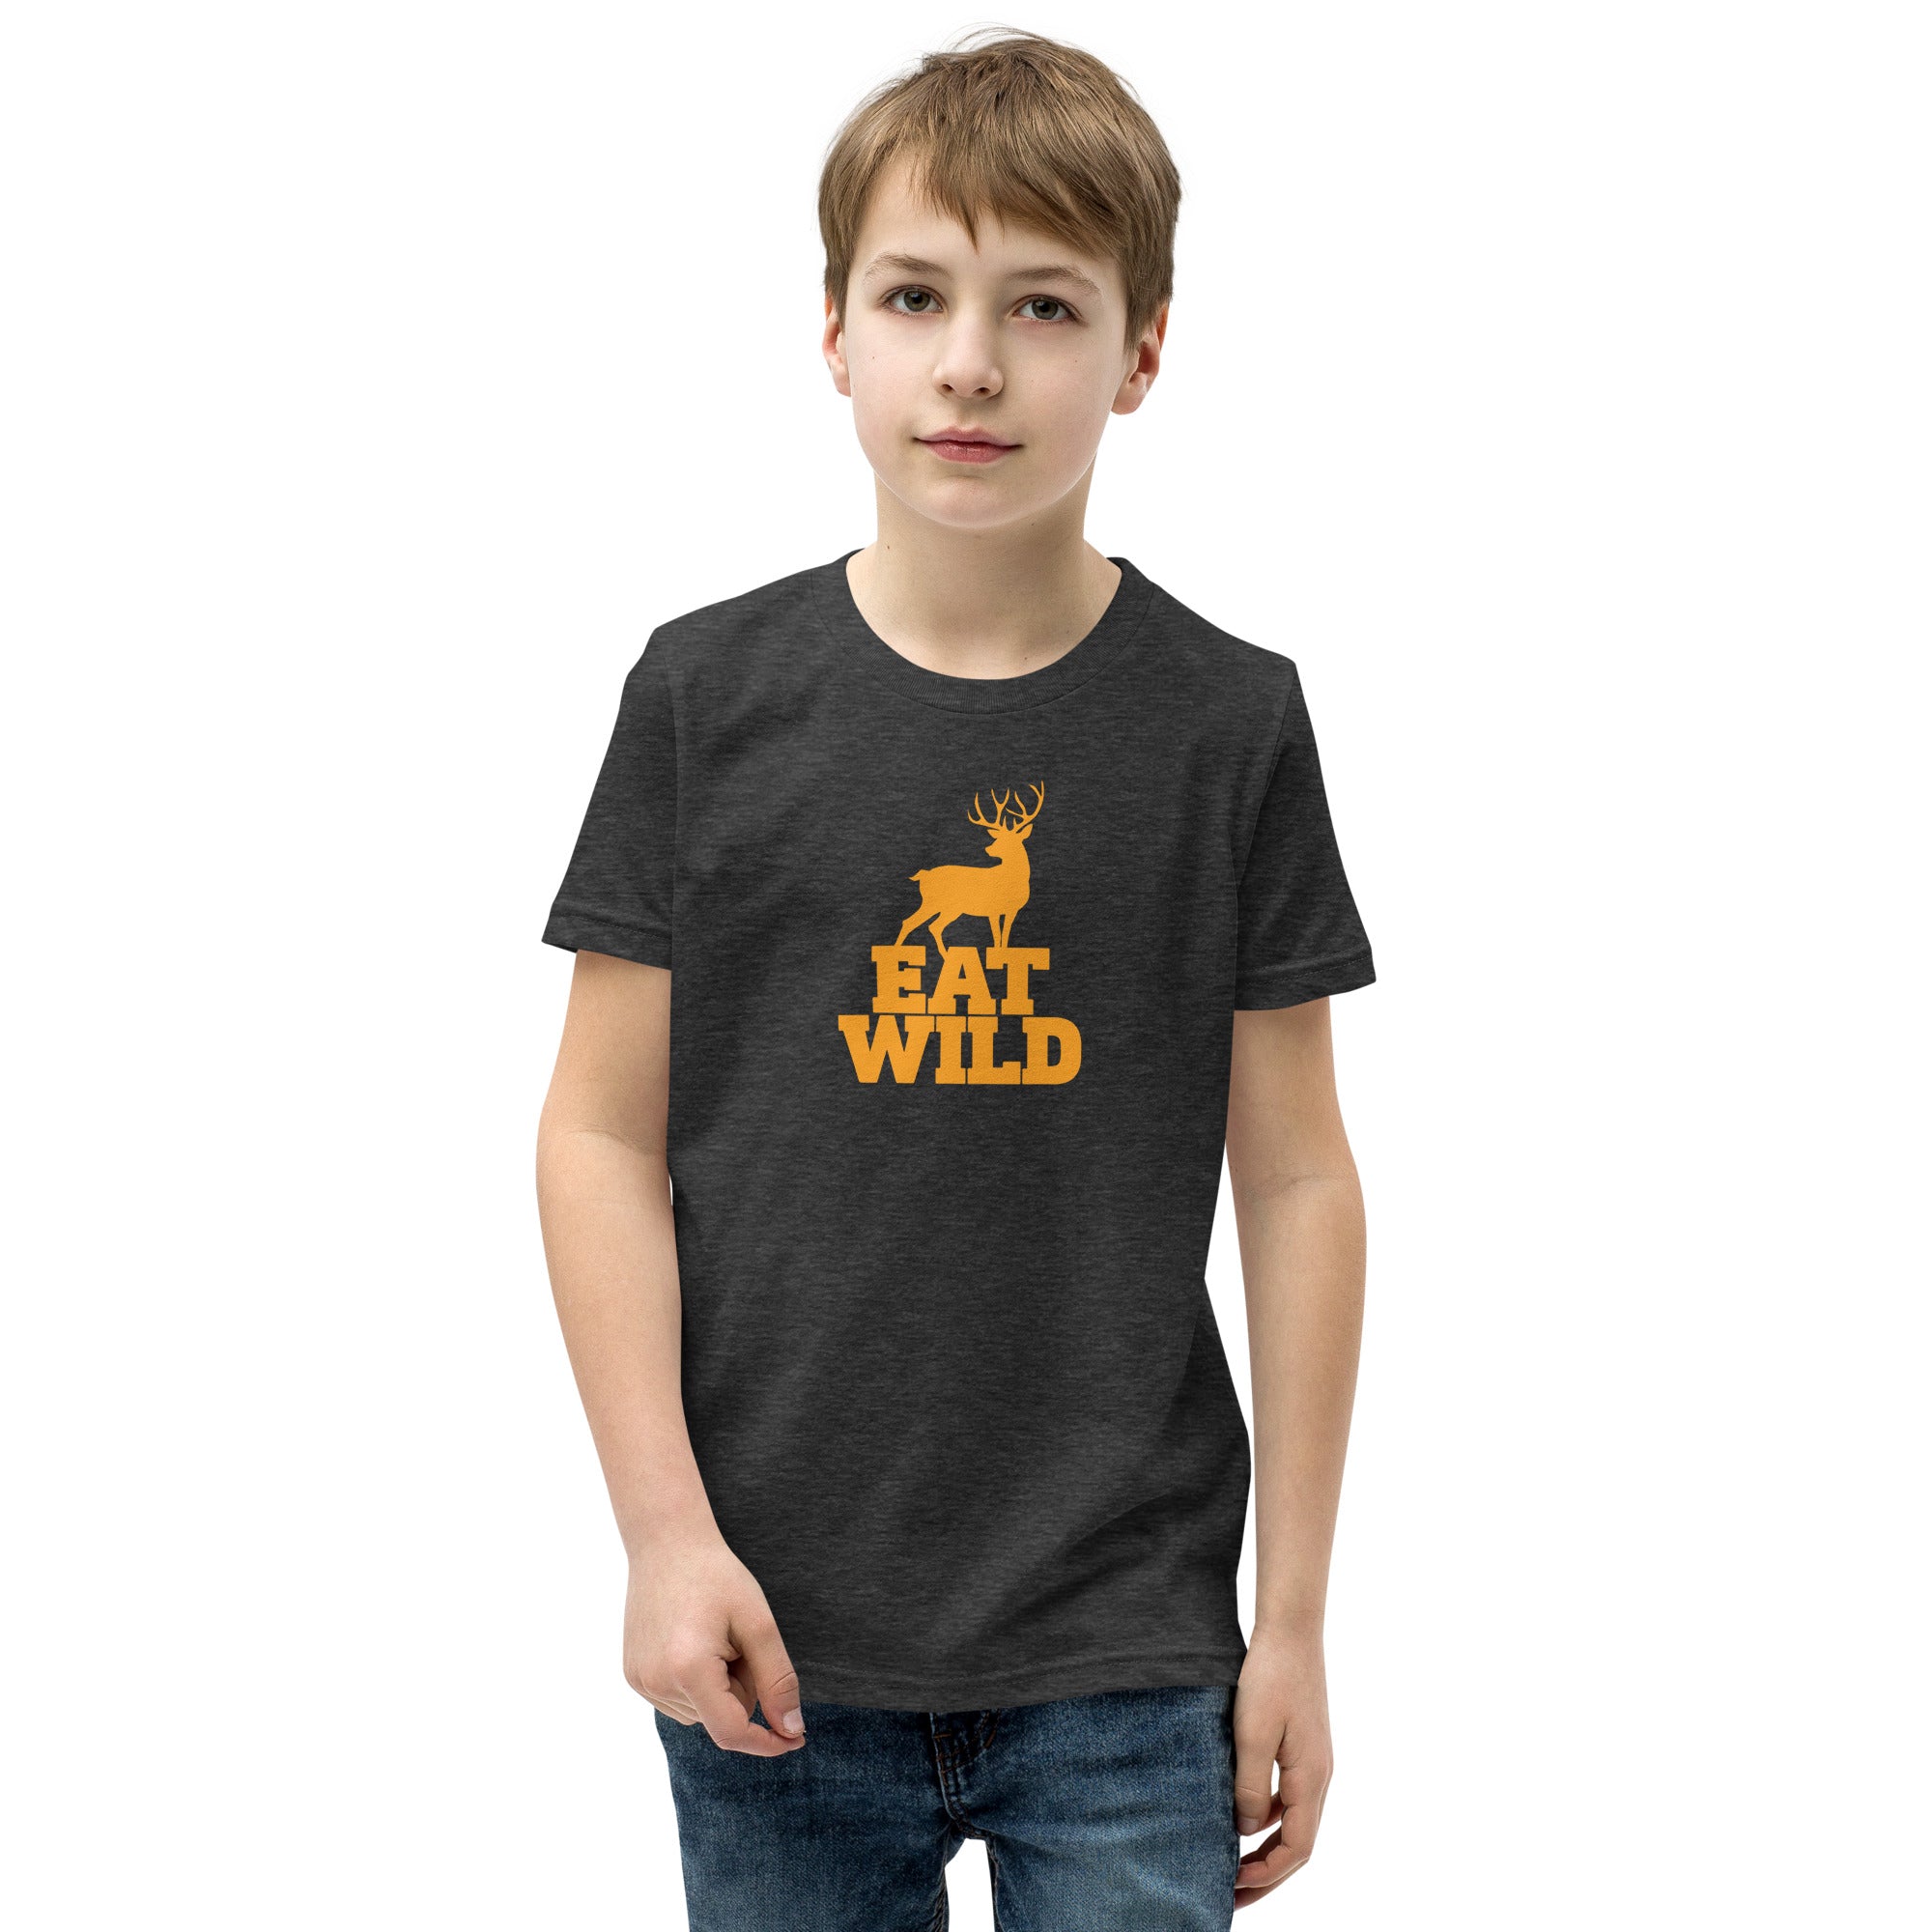 EatWild Youth T-Shirt